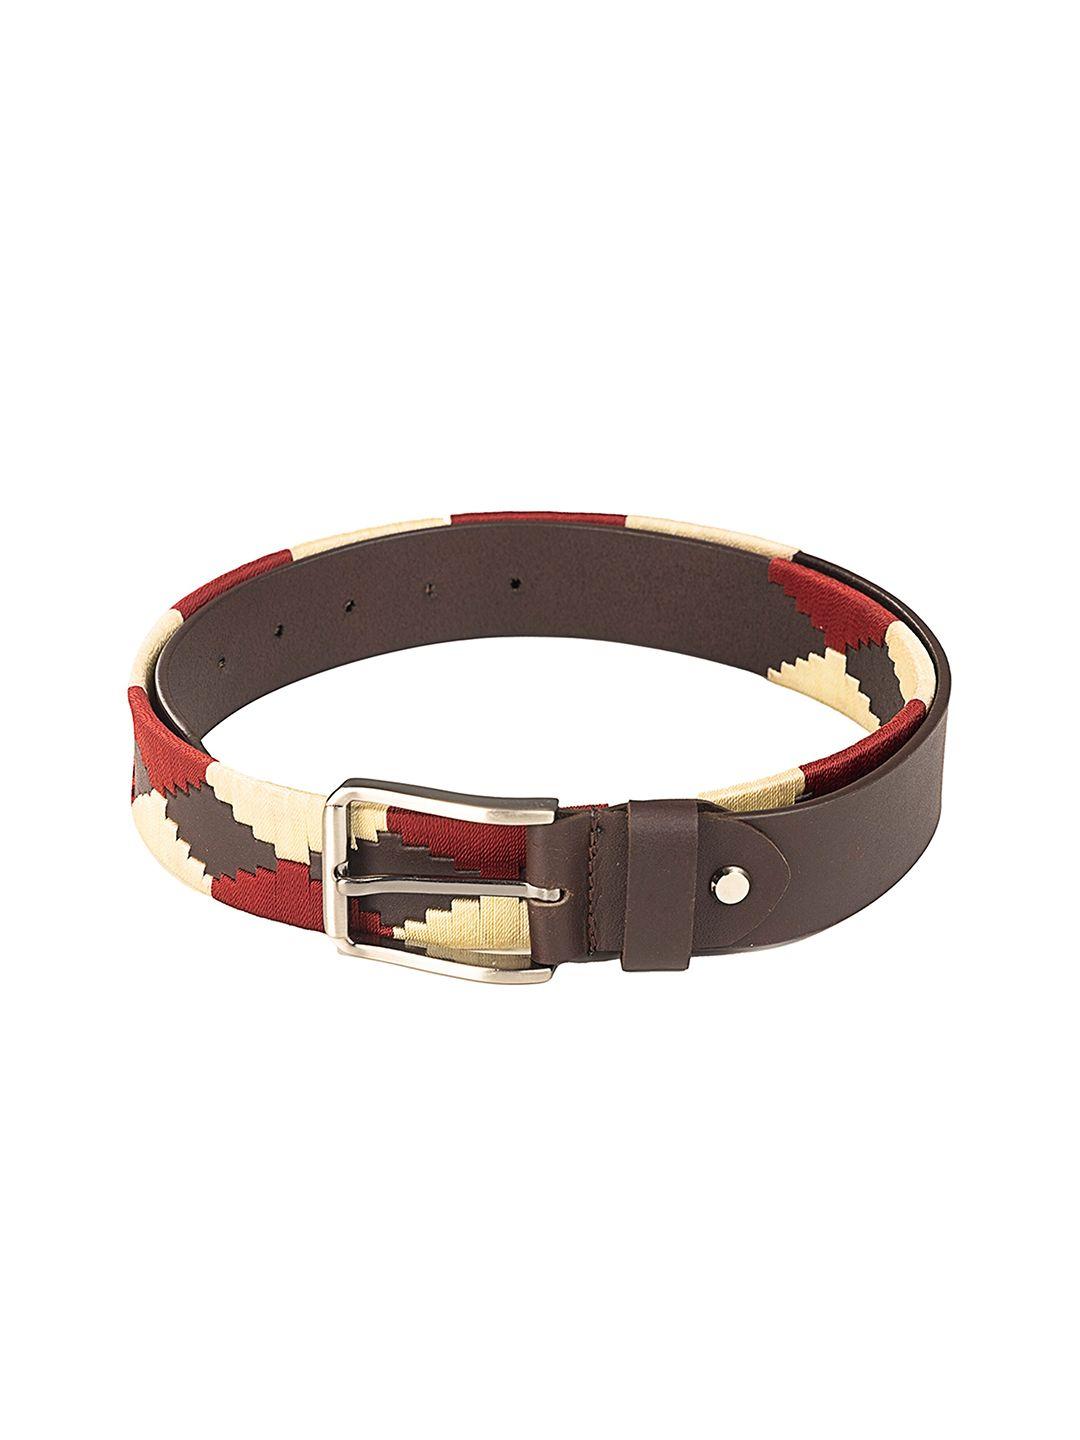 redhorns men textured leather belt